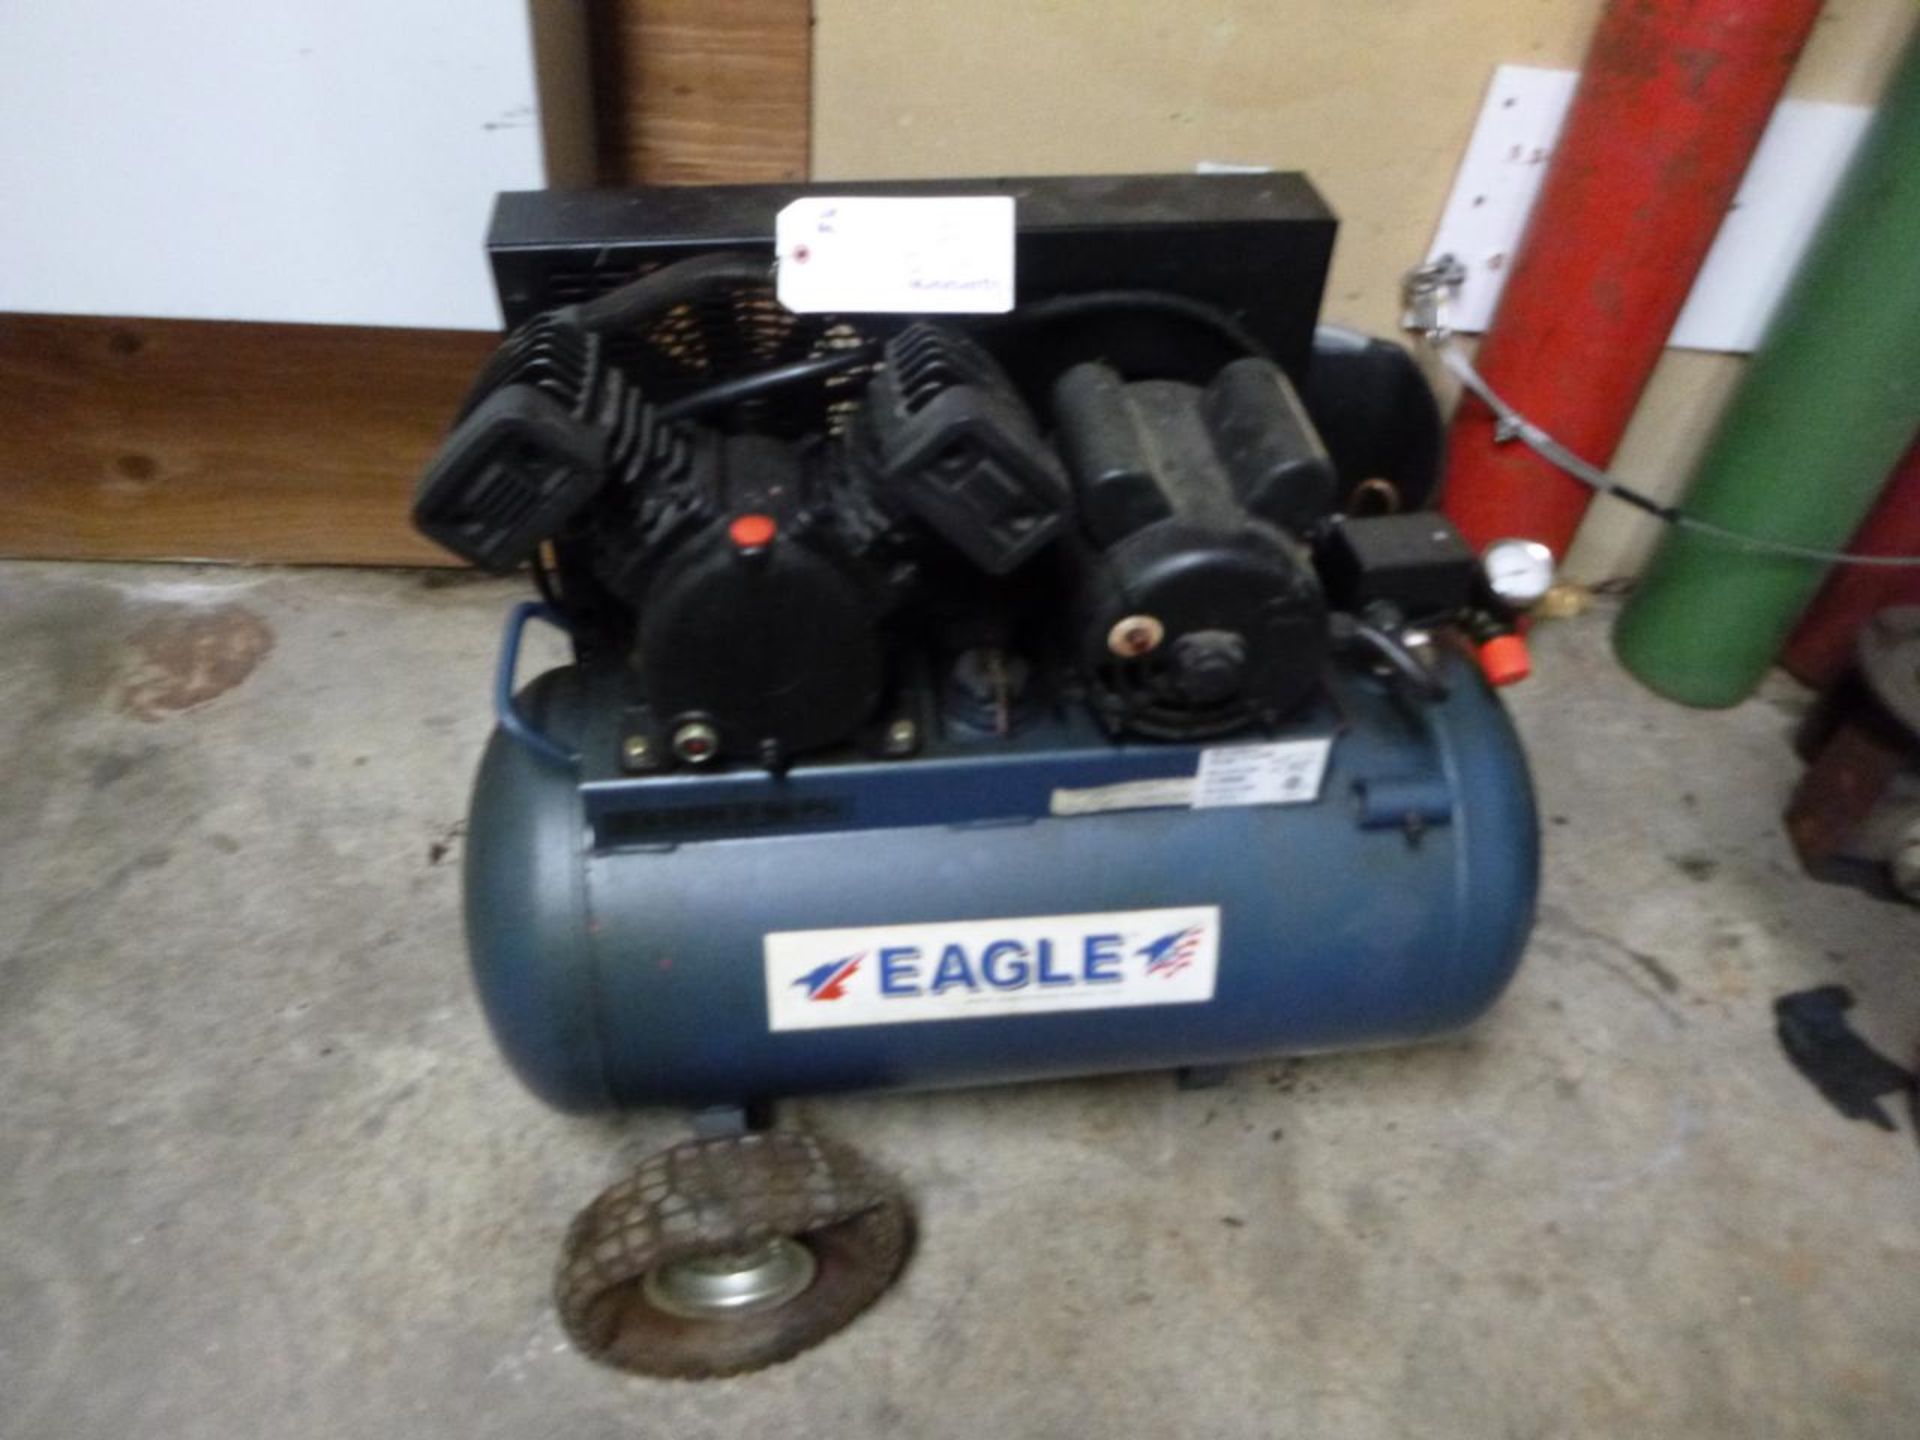 Eagle P3120 Air compressor